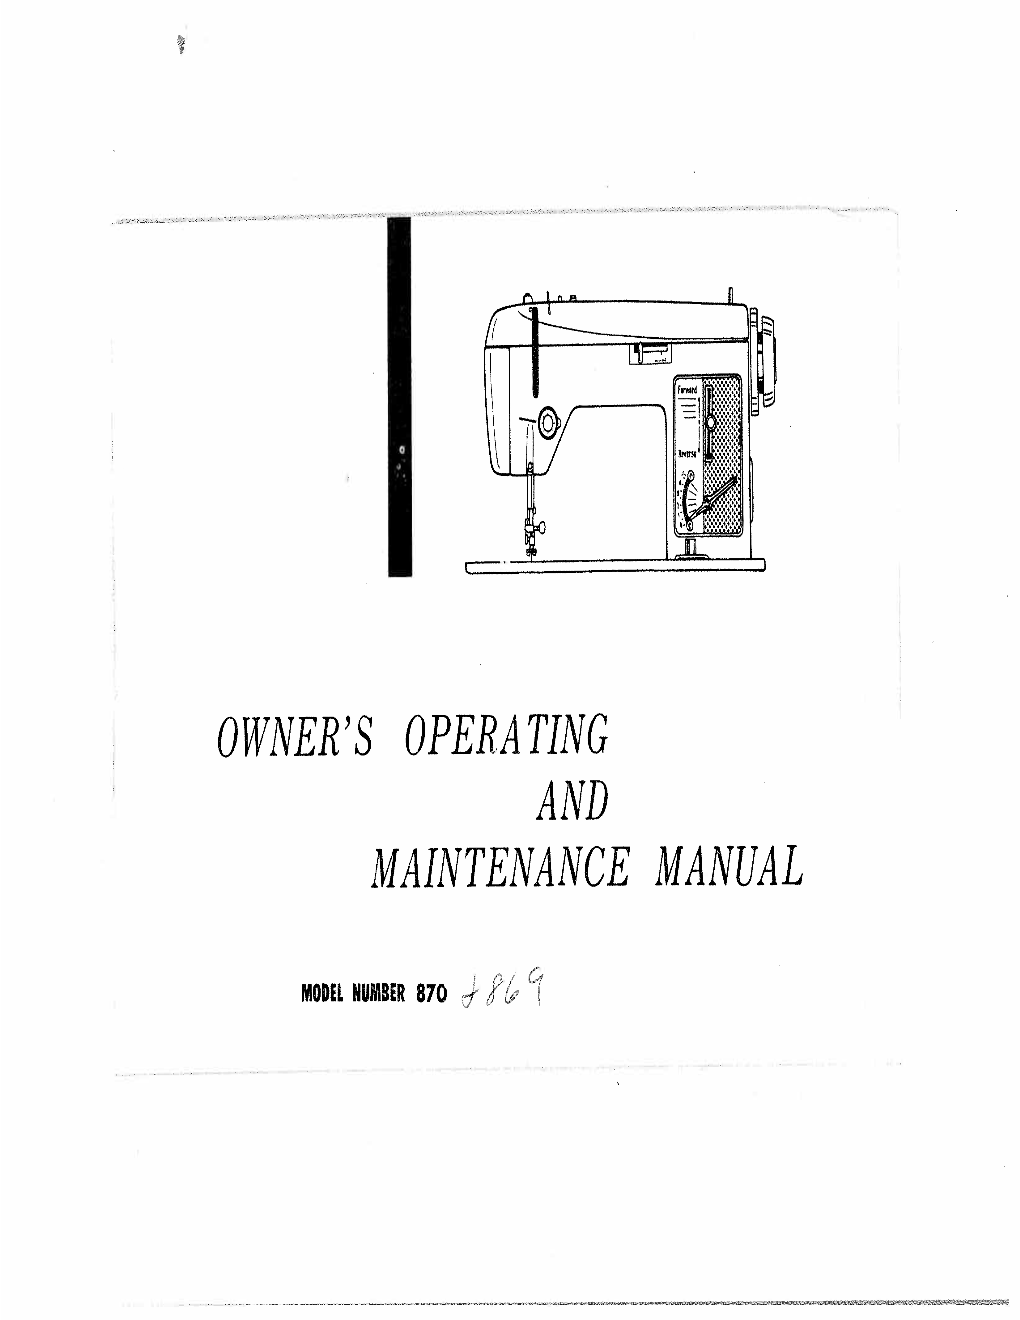 O Wner 'S Opera Ting and Maintenance Manual 4